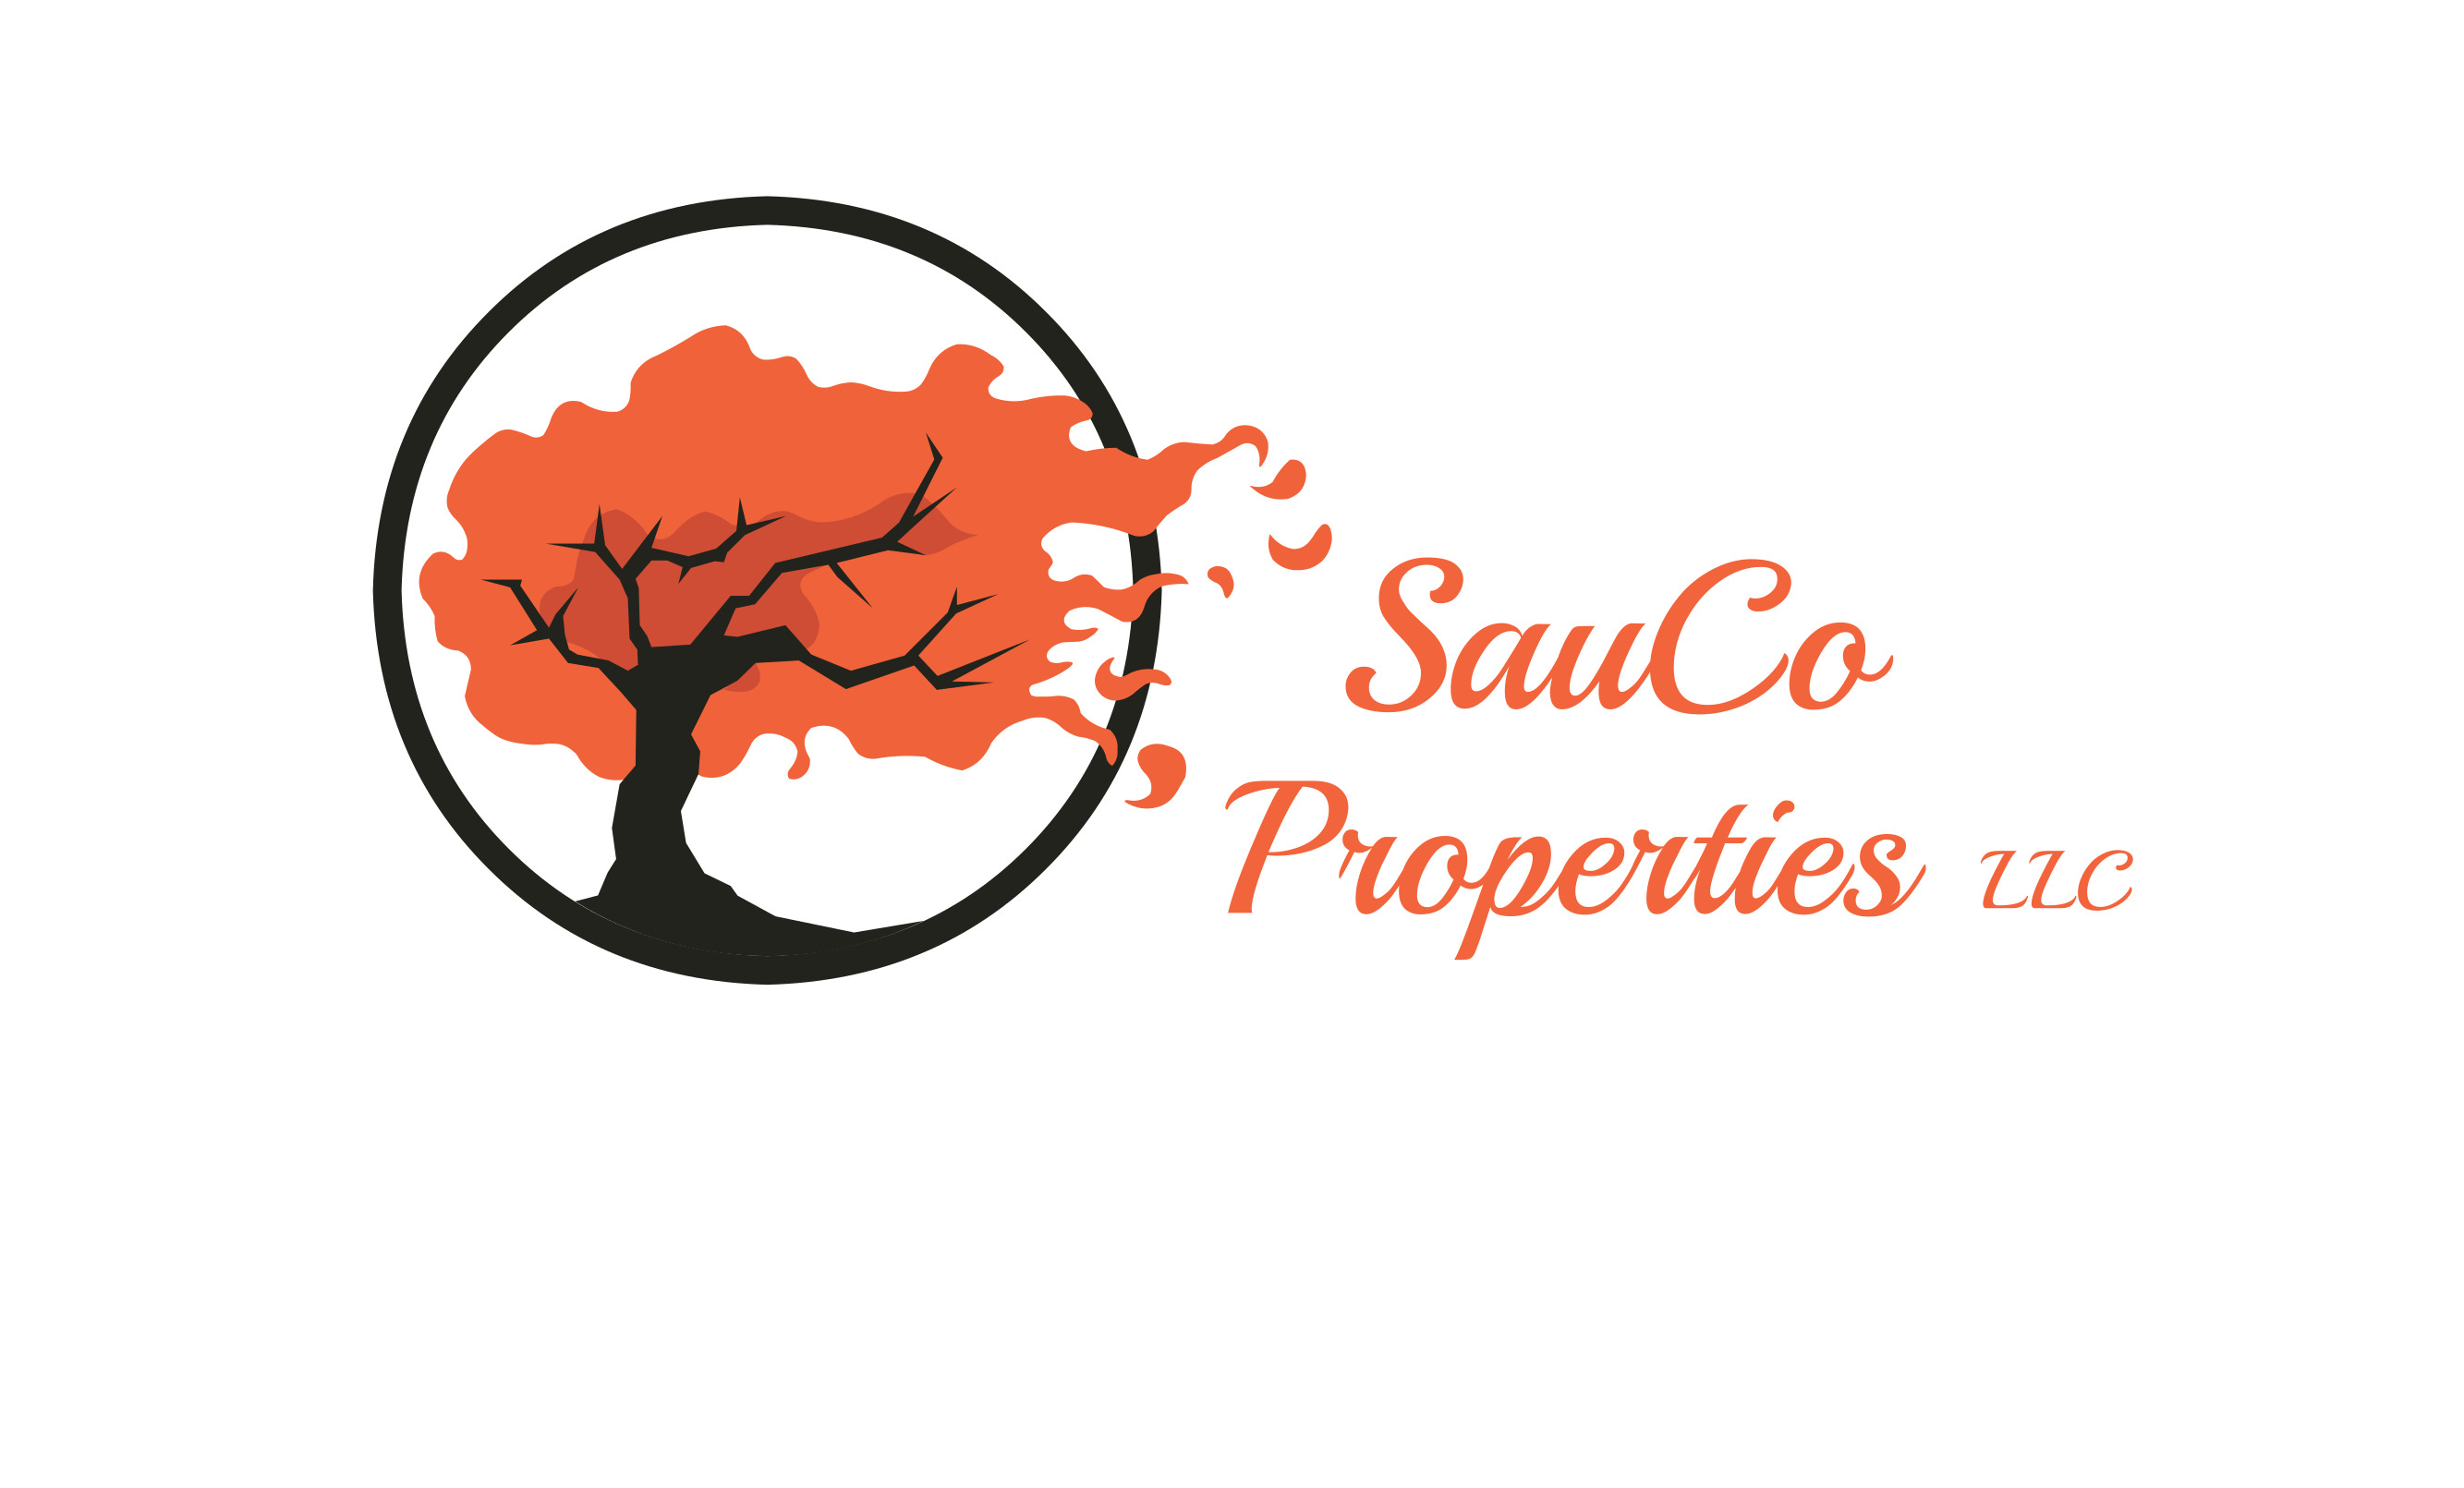 SauCo Properties